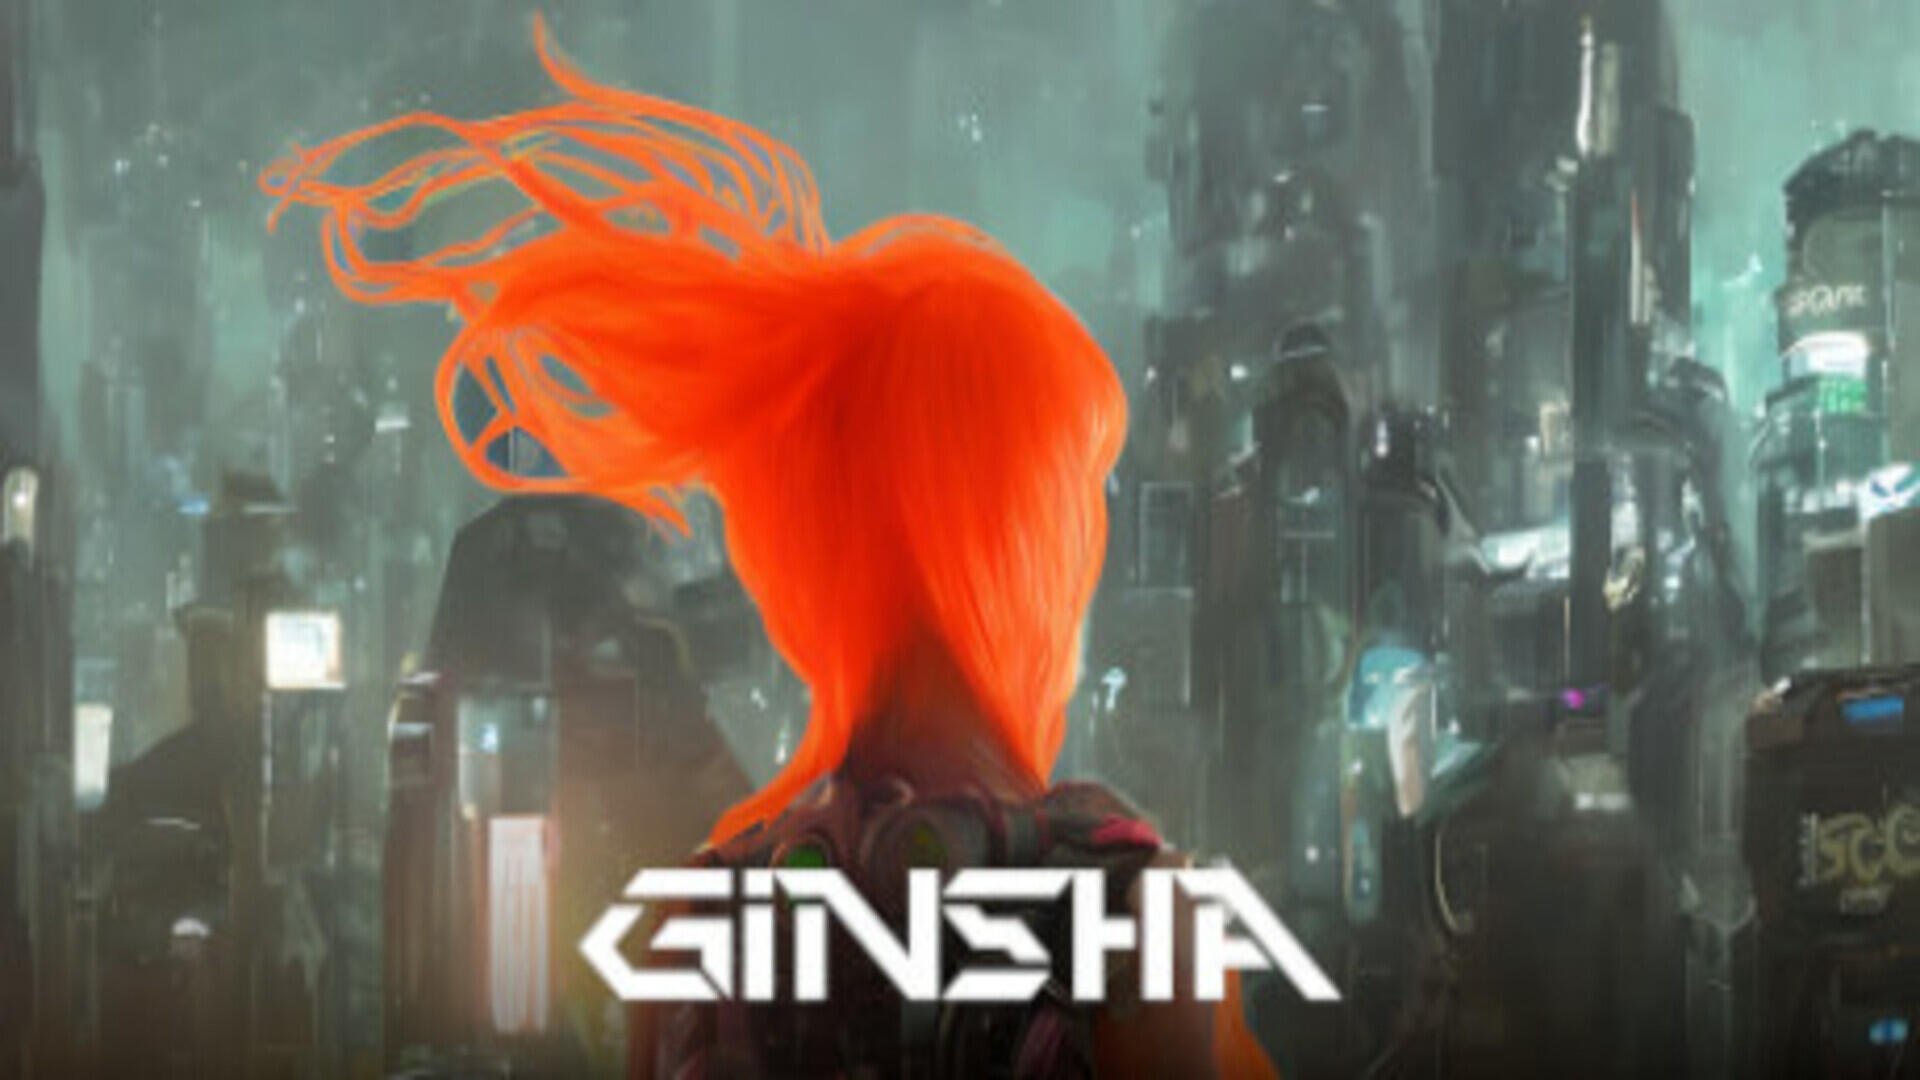 GINSHA (v1.0.5)